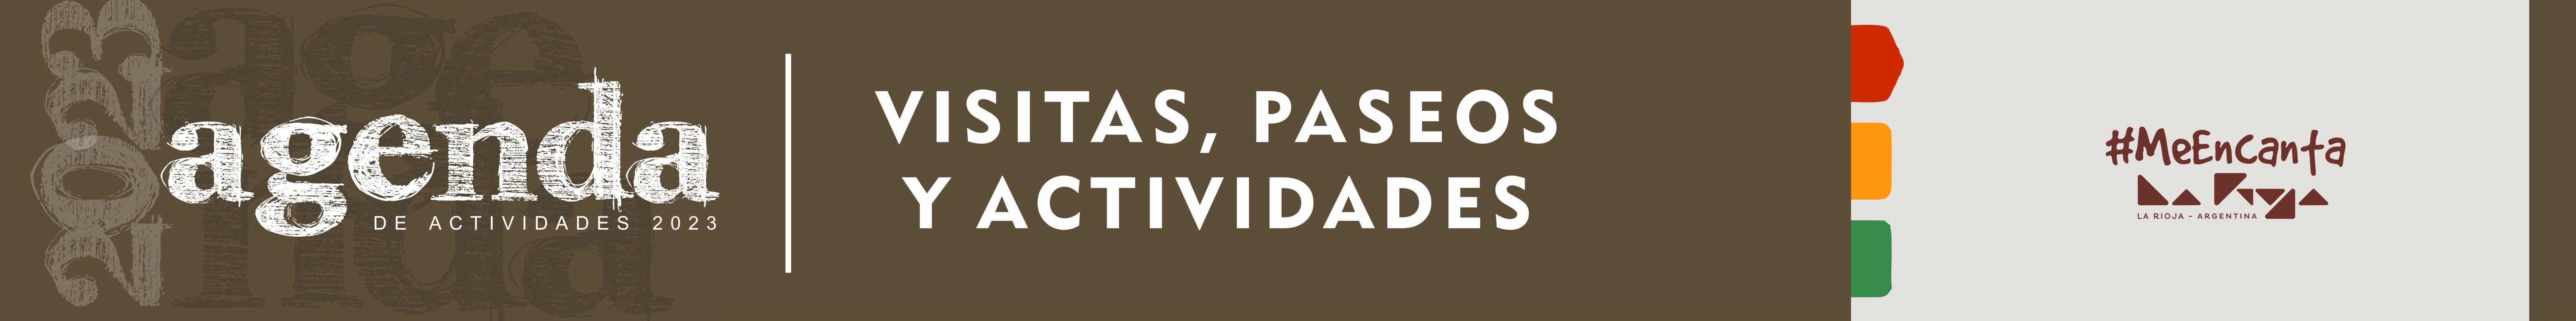 banners _agenda_VISITAS Y PASEOS